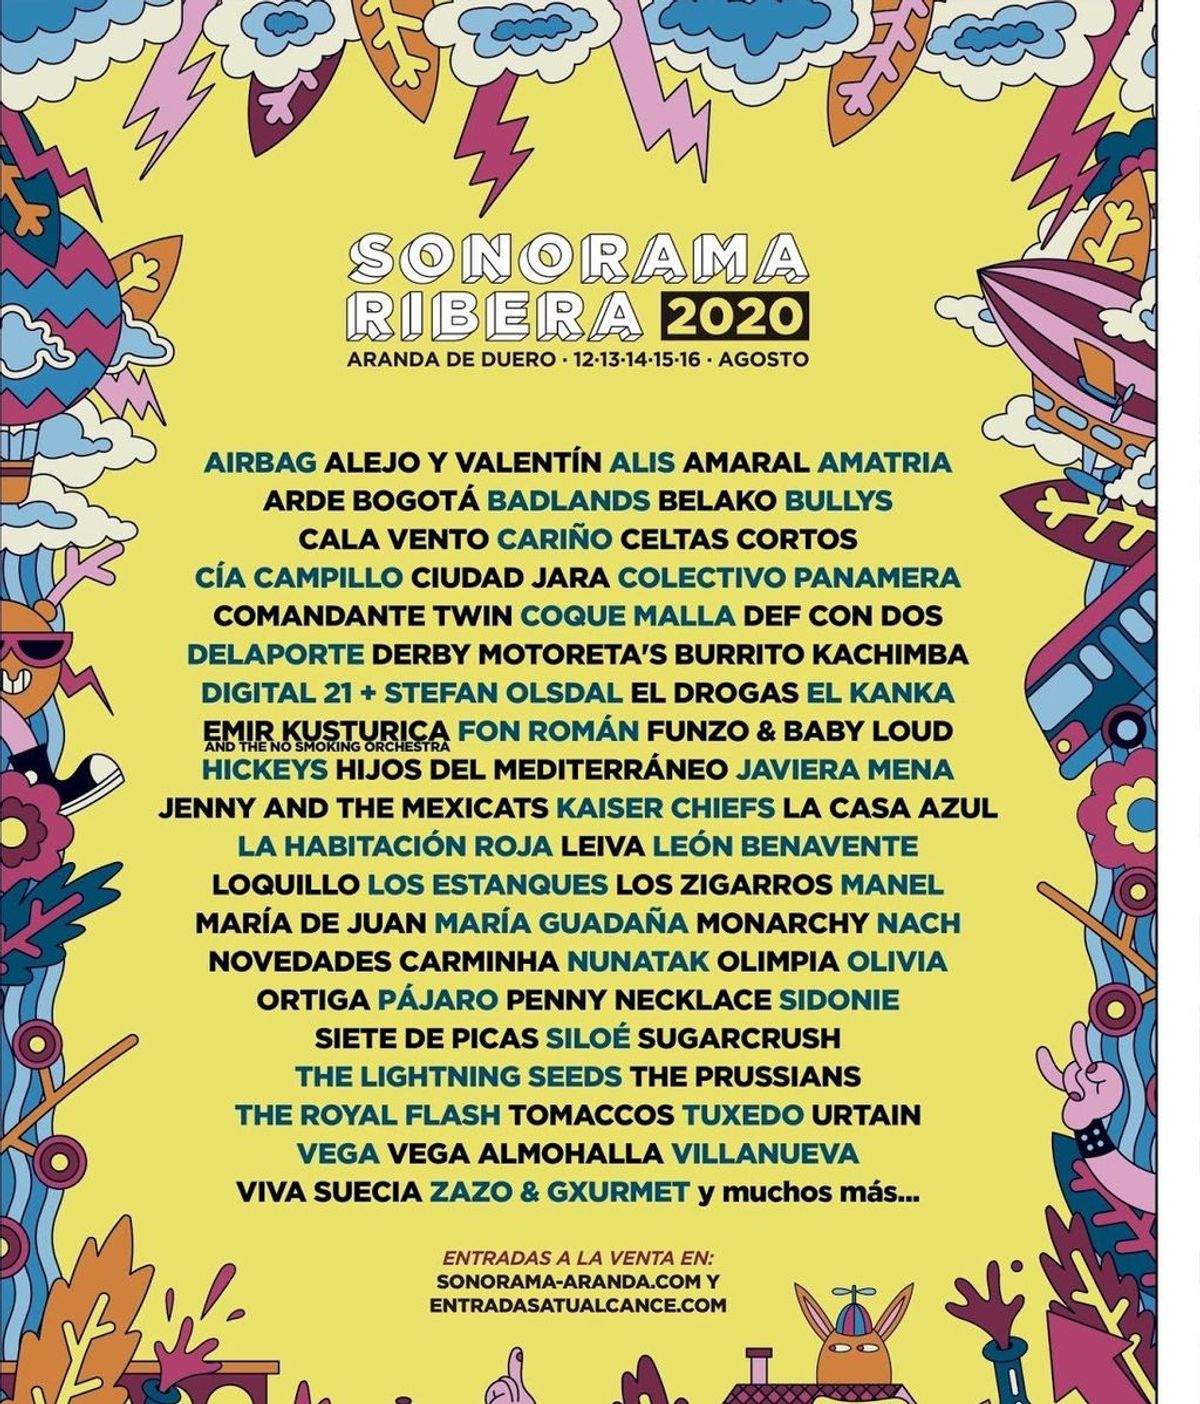 Sonorama Ribera aplaza el festival a 2021